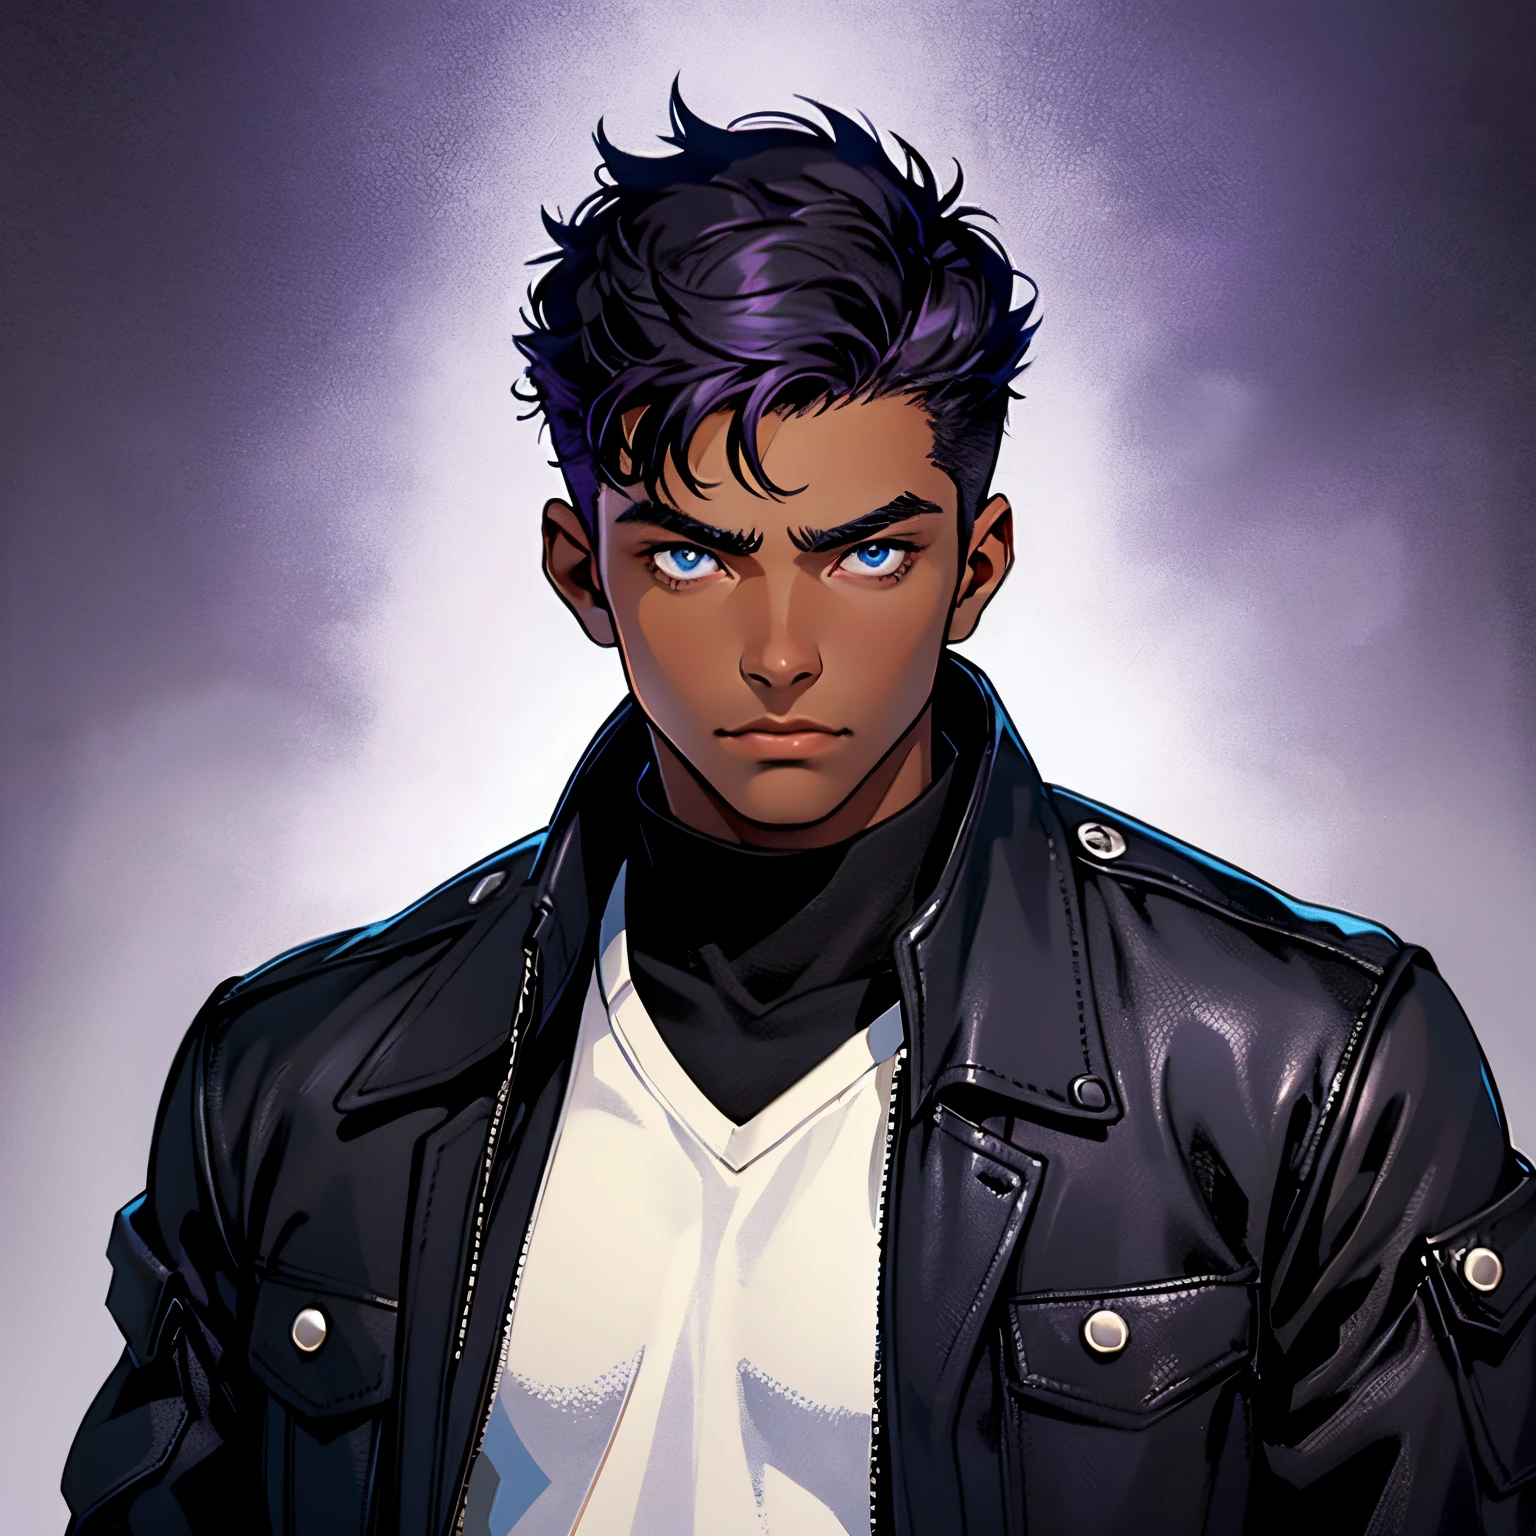 소년, 19 살, 위협적인, 멋있는, 검은 피부와 검은 머리 자르기, 파란 눈, 검은 재킷을 입는다, 뷰어를 본다. 배경은 어둡고 보라색입니다.